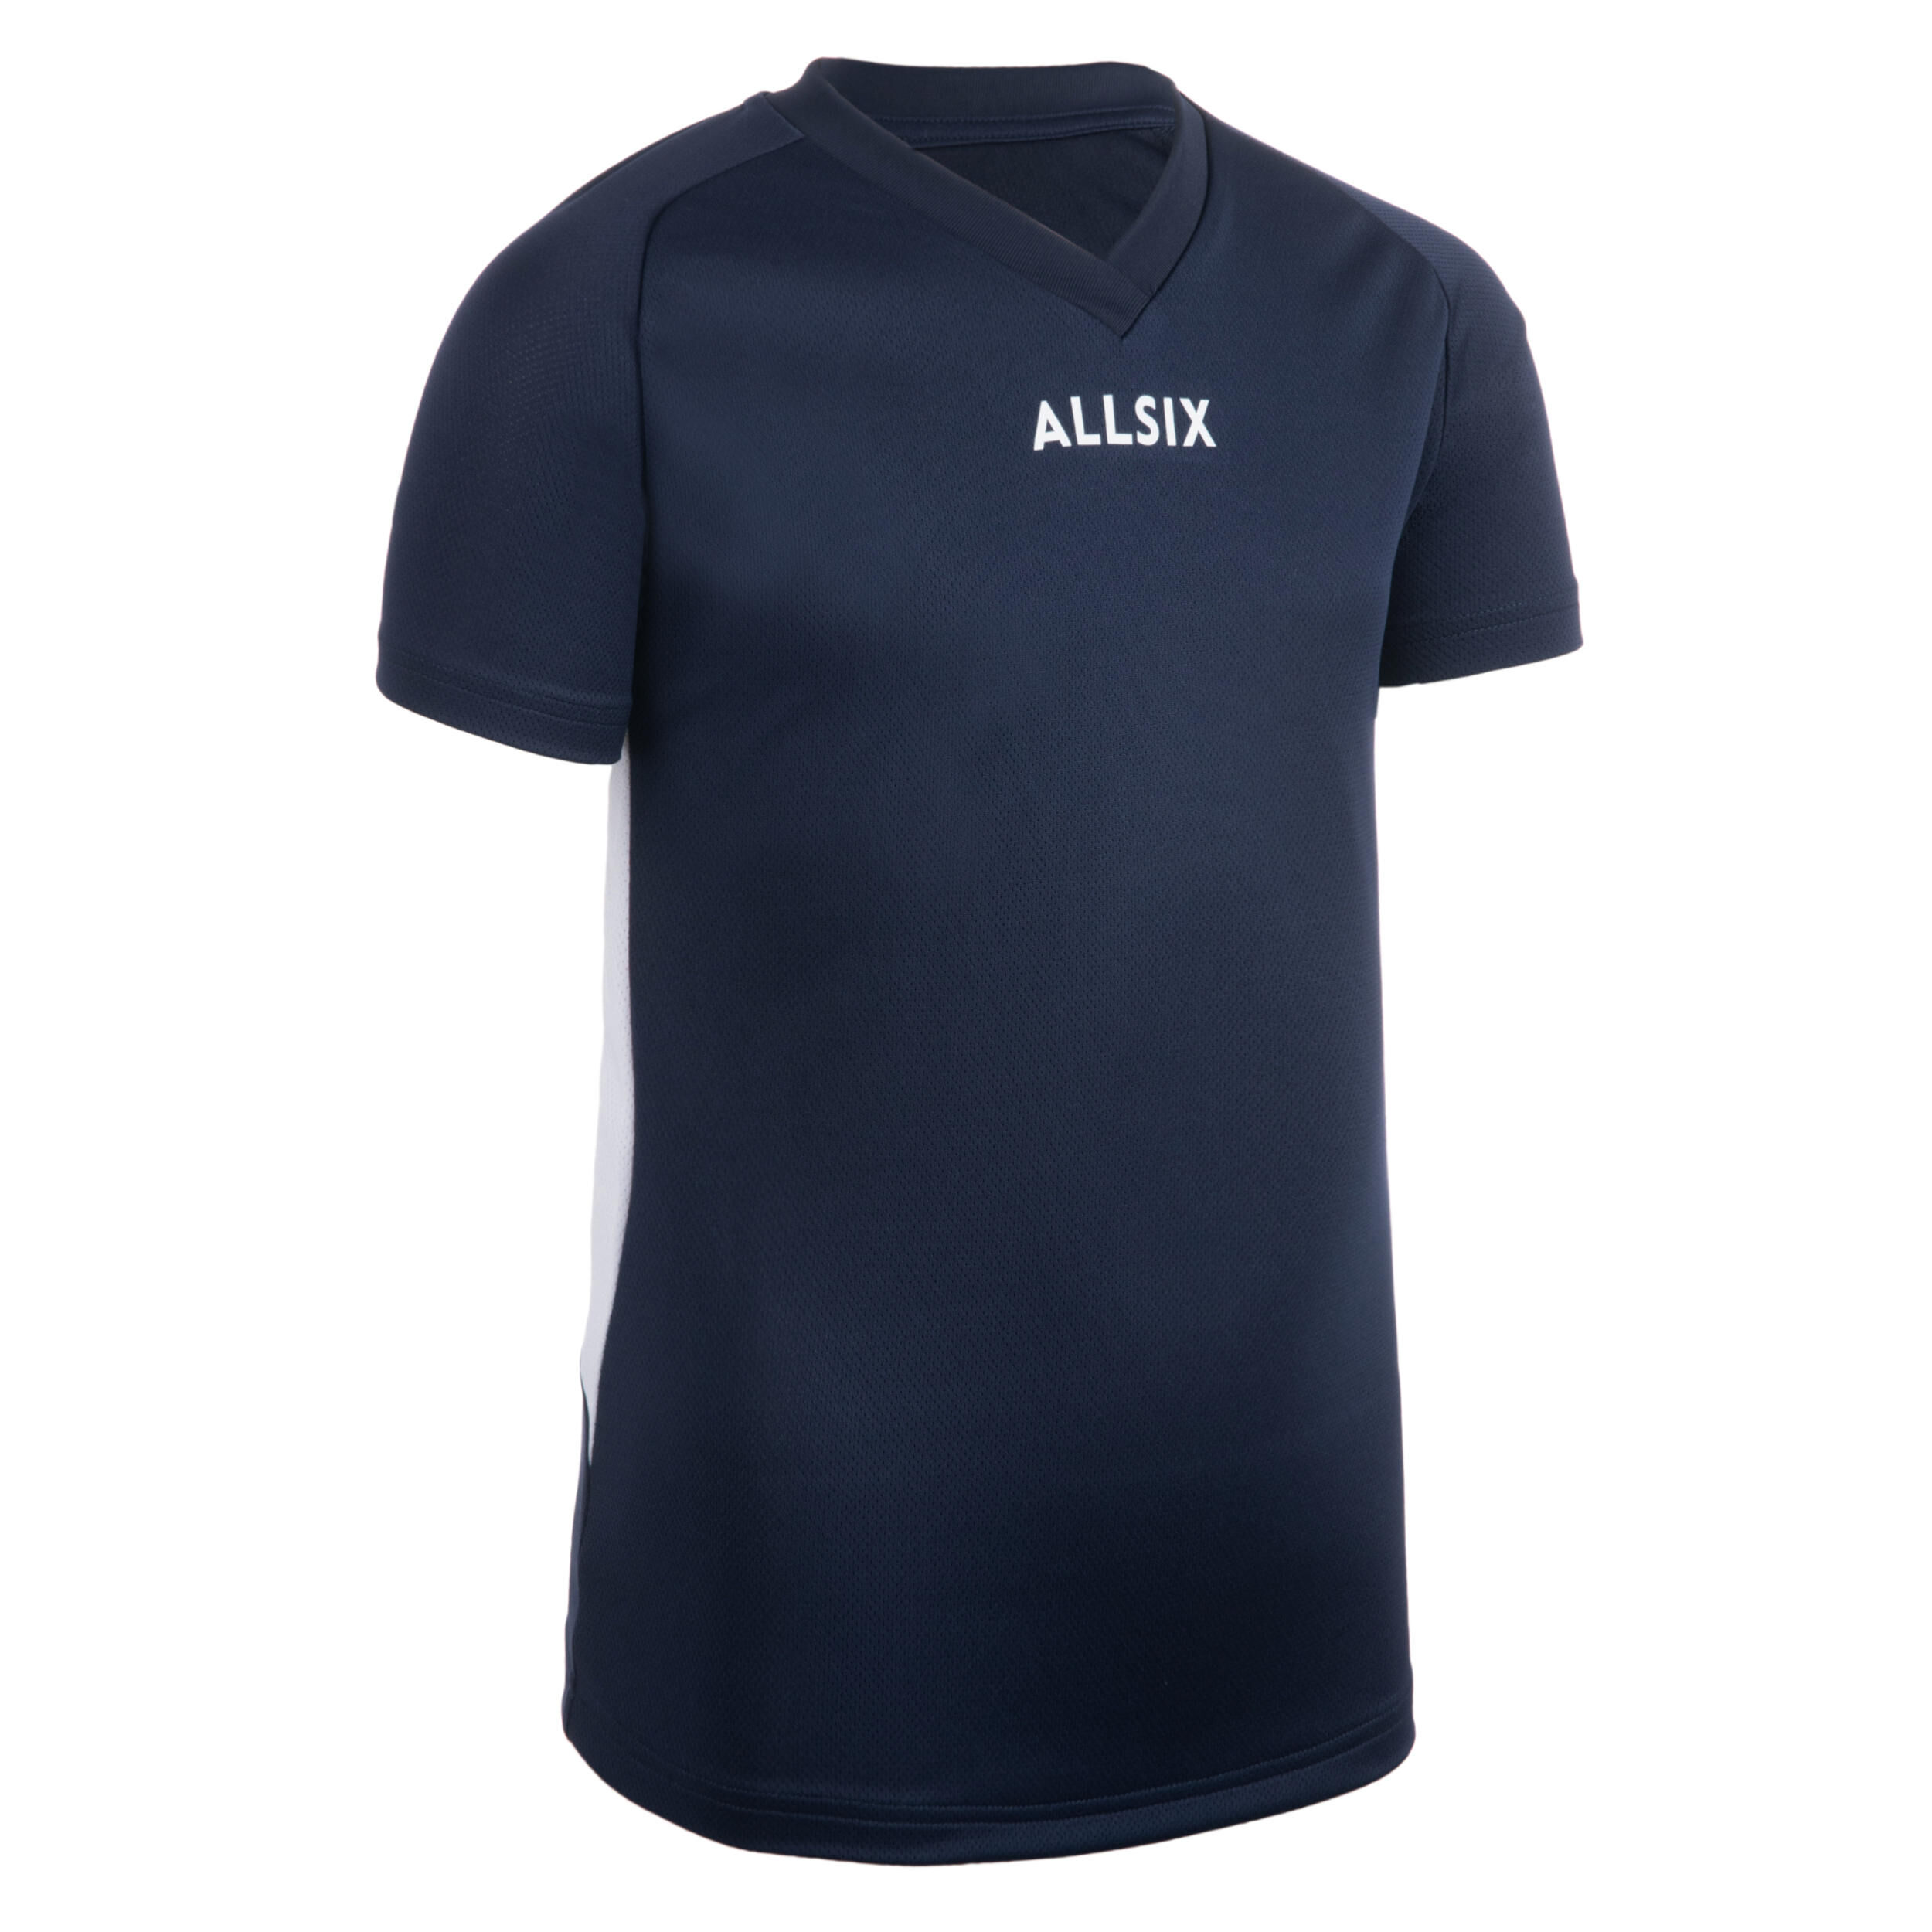 ALLSIX V100 Boys' Volleyball Jersey - Navy Blue